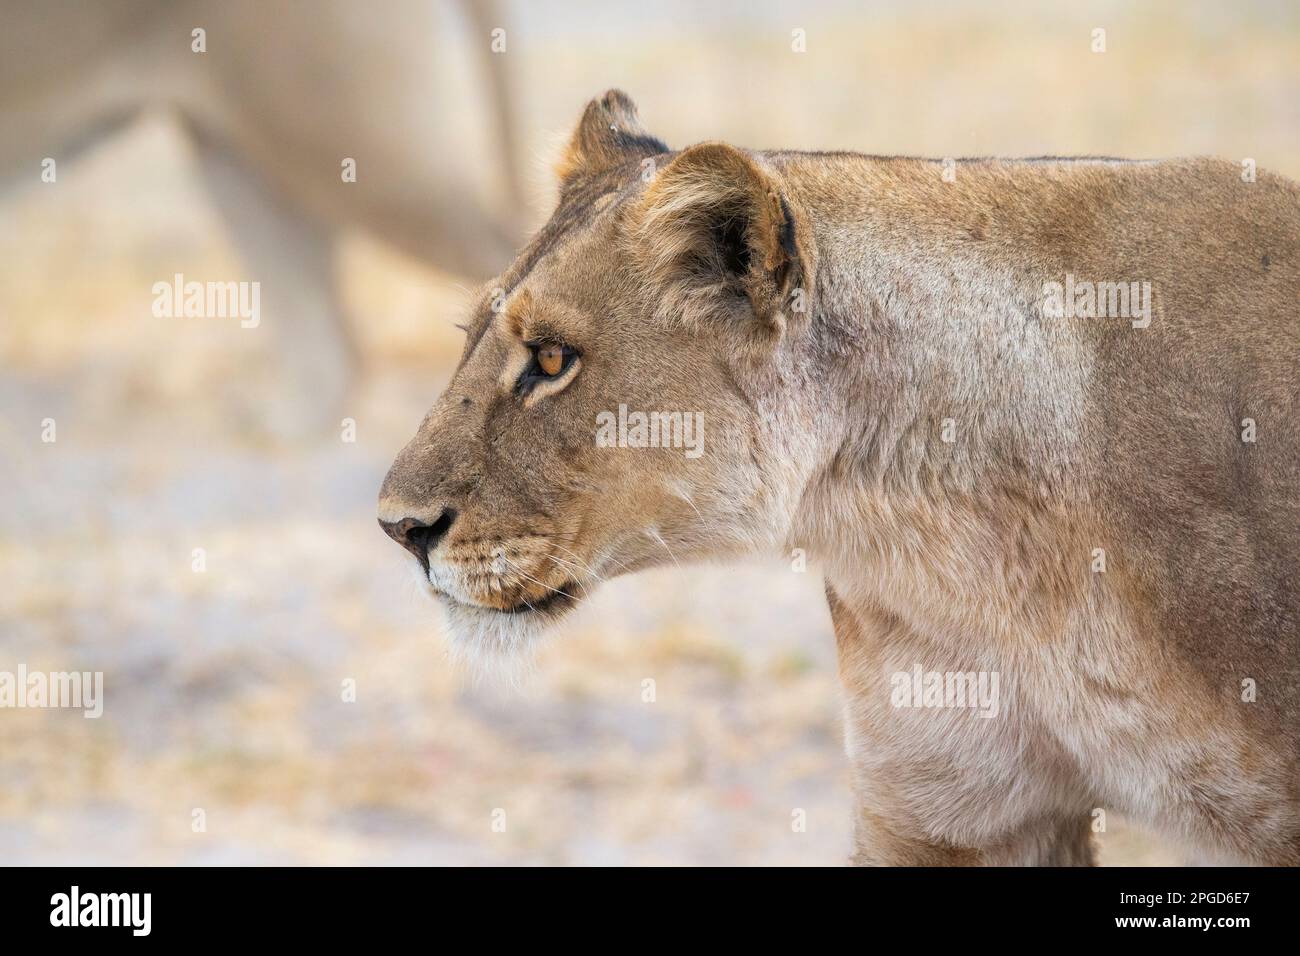 Löwin, (Panthera leo), Porträt des weiblichen Löwengesichts und Kopfes nach links. Unscharfer Hintergrund. Okavango Delta, Botsuana, Afrika Stockfoto